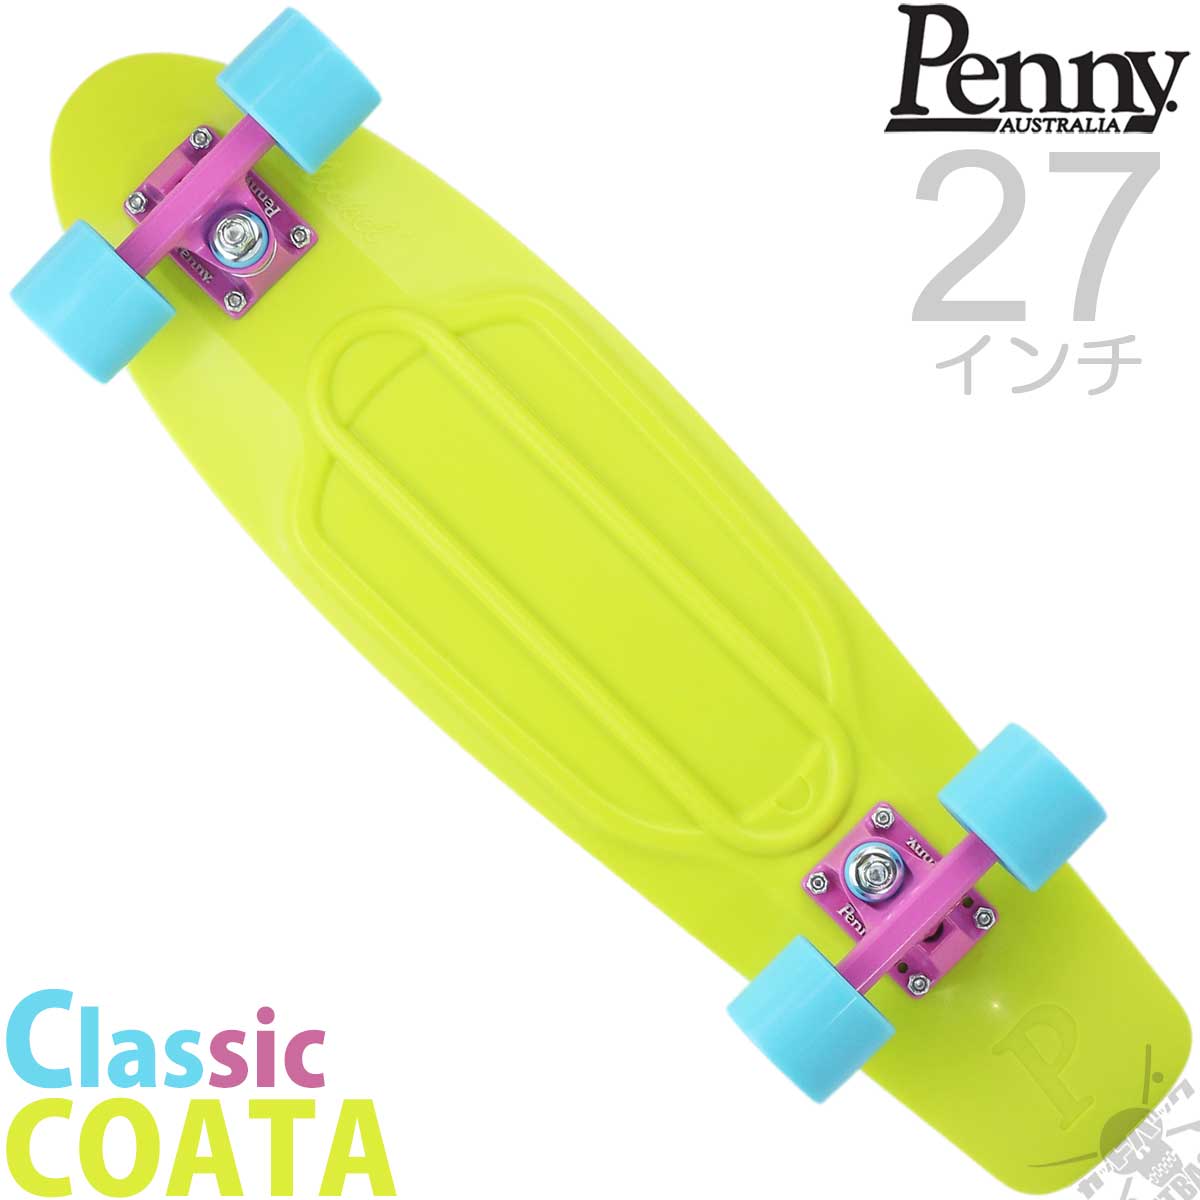 ペニースケートボード 27インチ ニッケル クラシック コスタ Penny Skateboard Nickel Classic Costa  スケートボード スケボー スケート ペニー クルーザー コンプリート 完成品 ブランド 国内正規品 おすすめ 人気 プレゼント | 